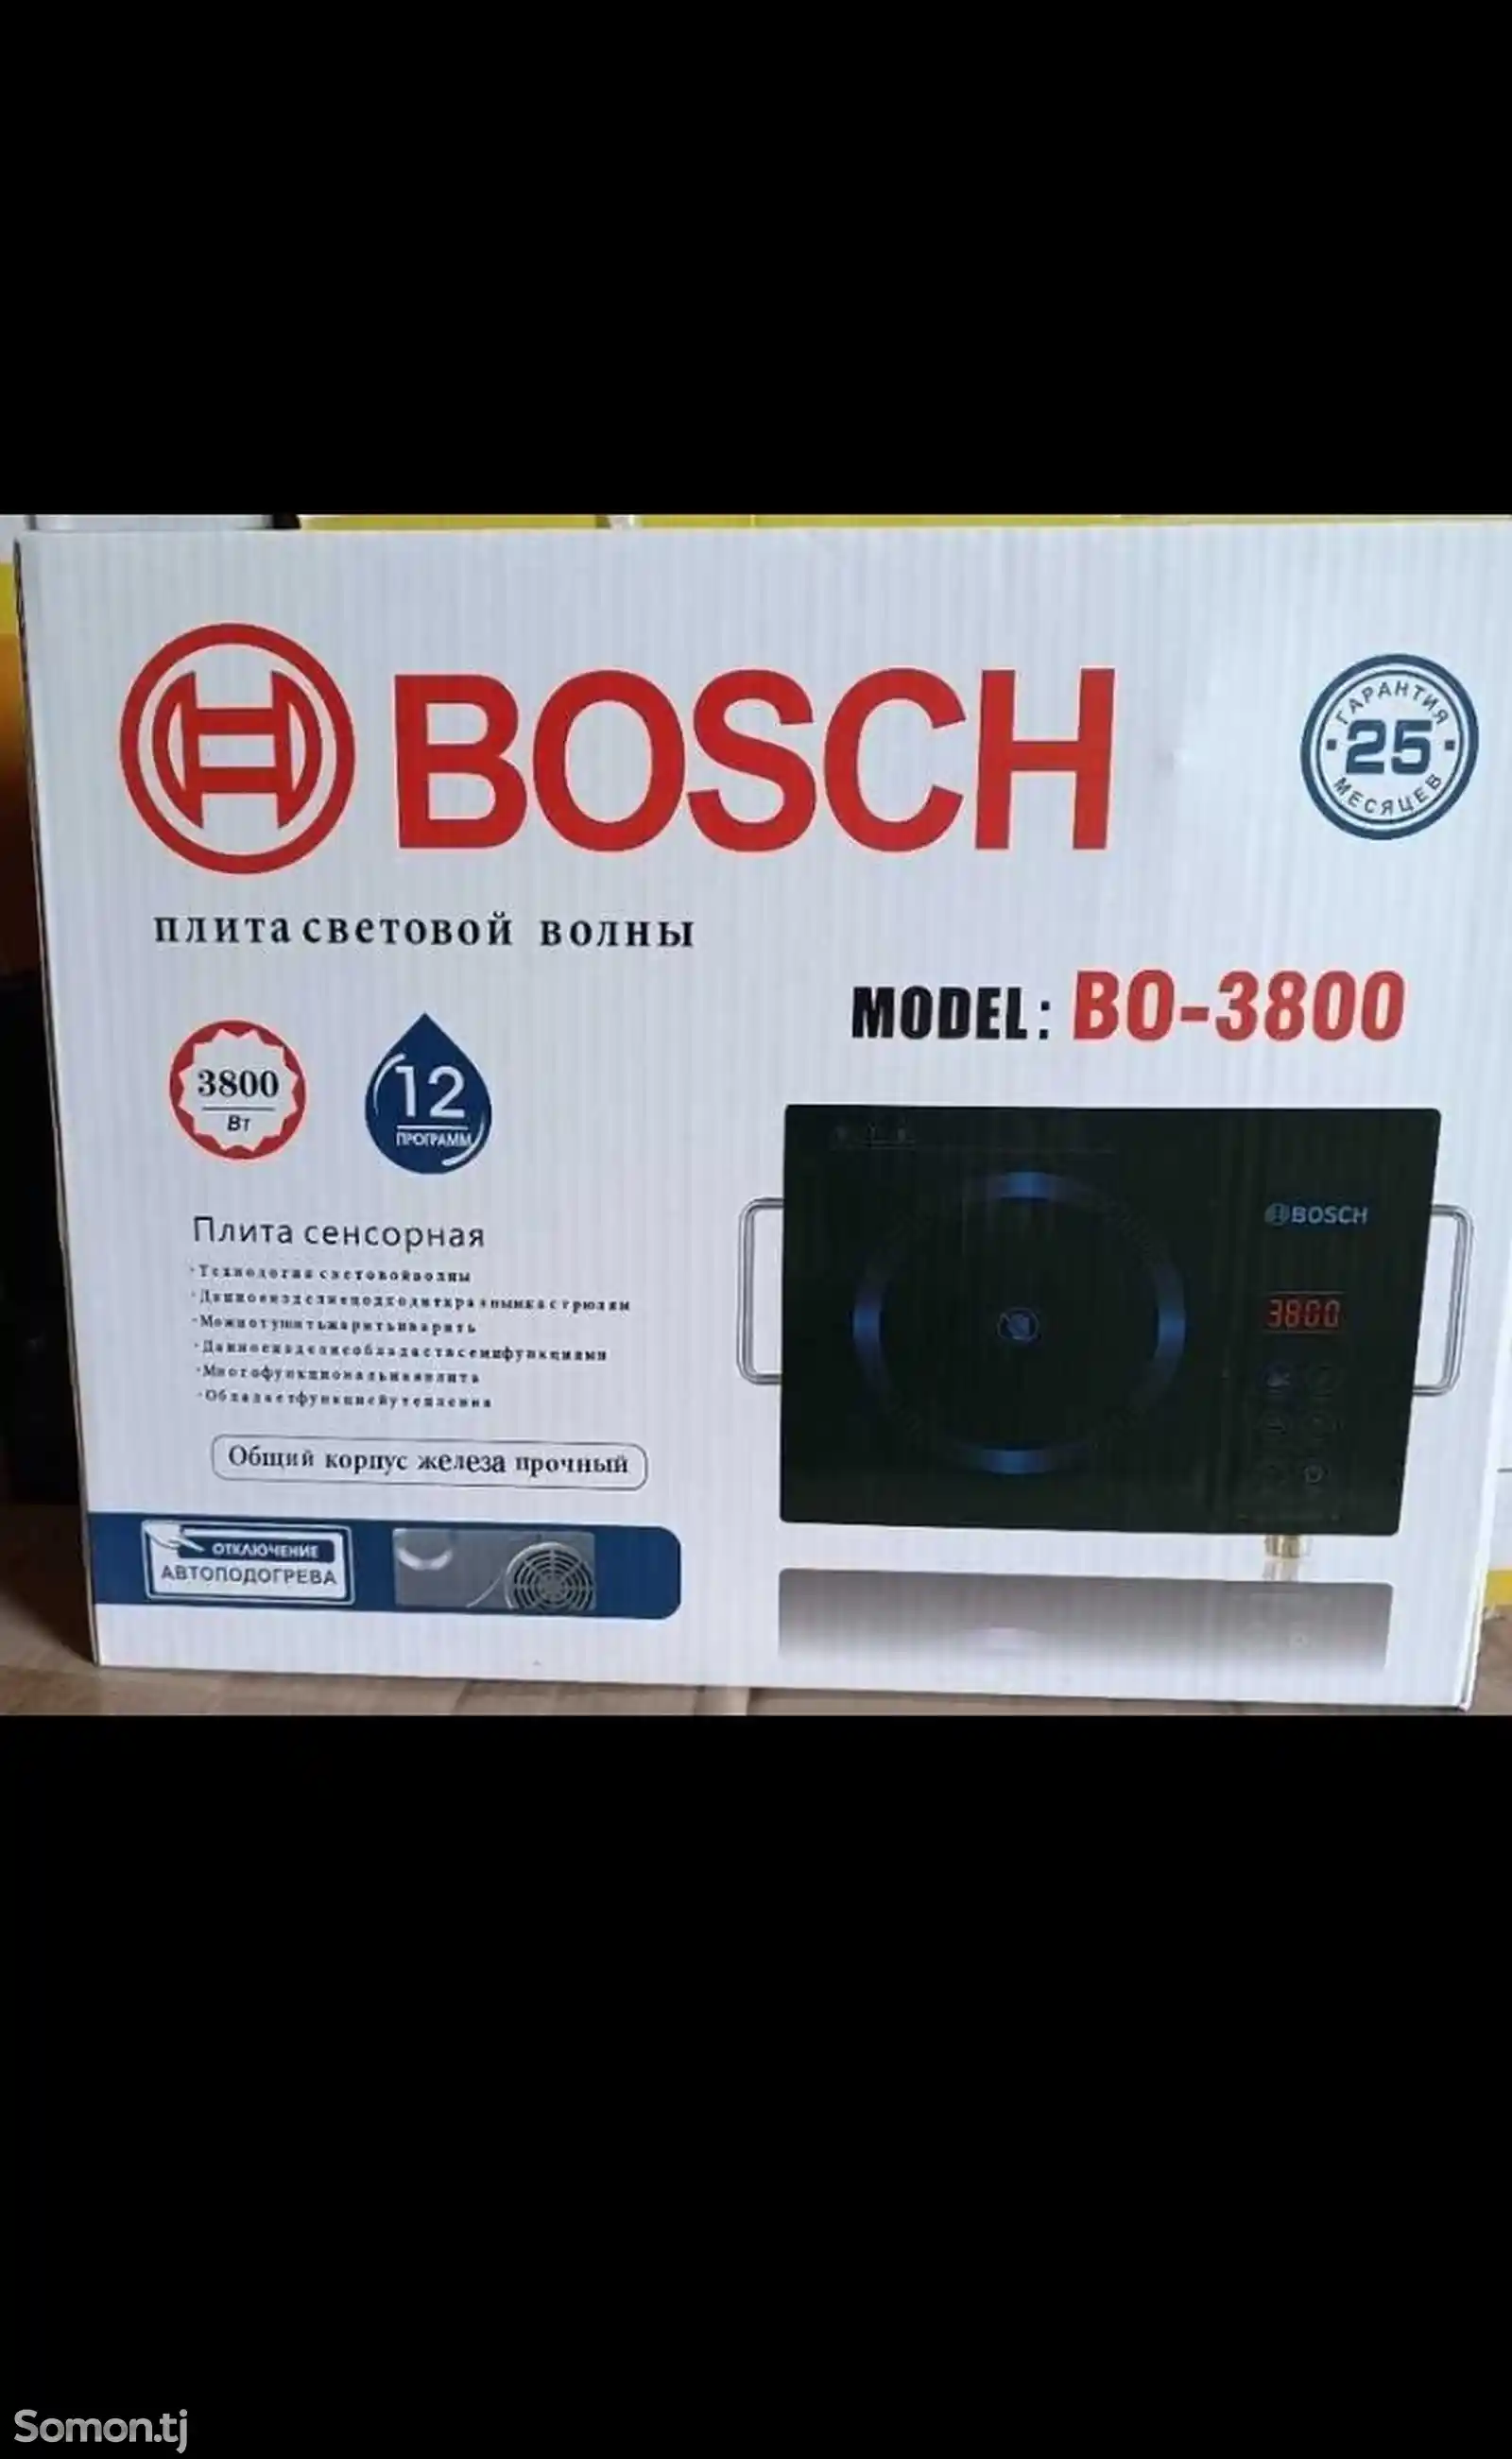 Сенсорная плита BOSCH-1